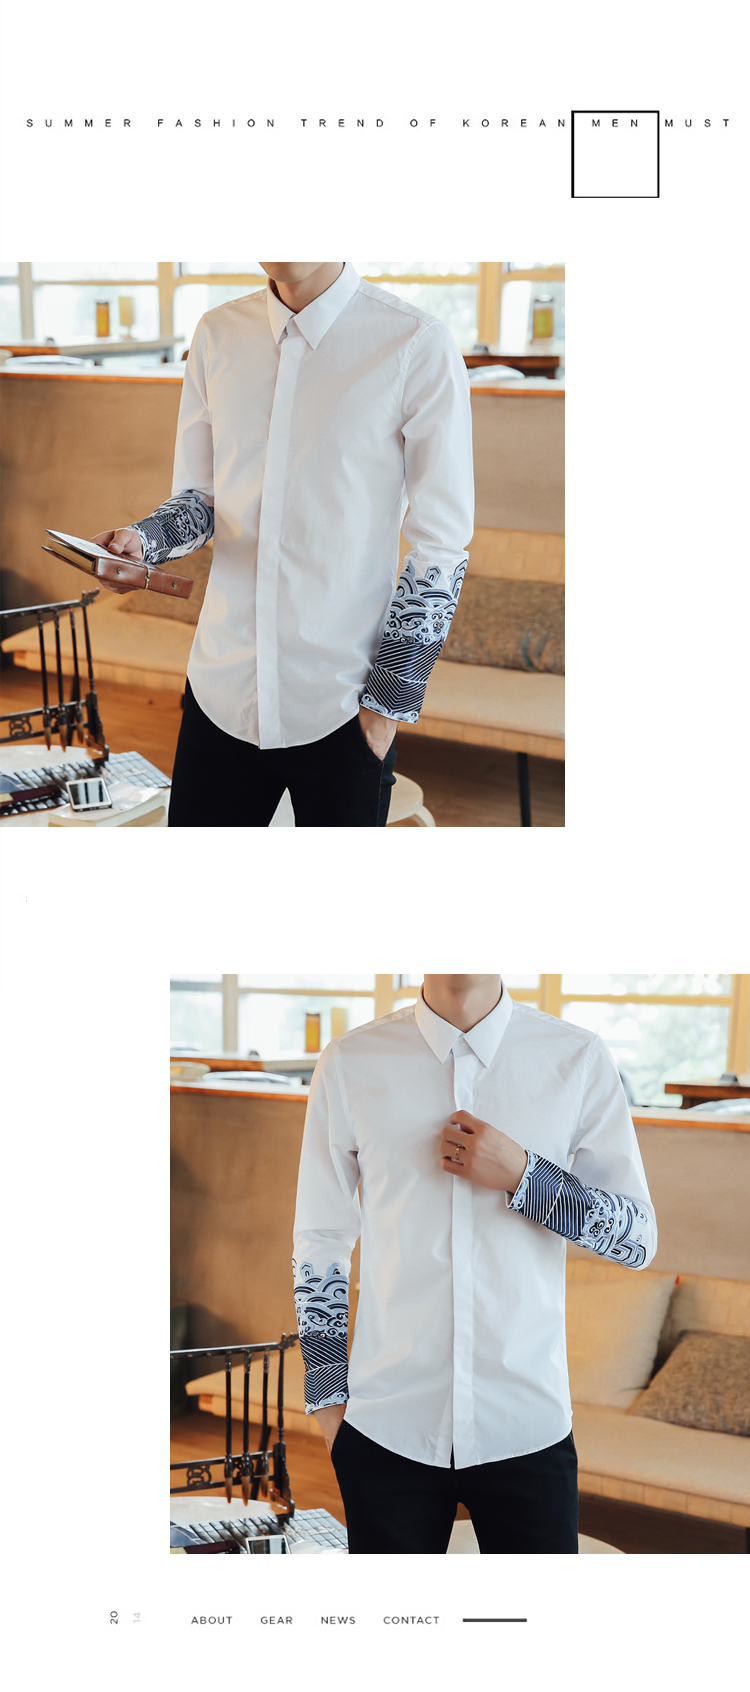 2017衬衫男士长袖t恤唐装中国风体桖青年上衣服修身秋季刺绣外套